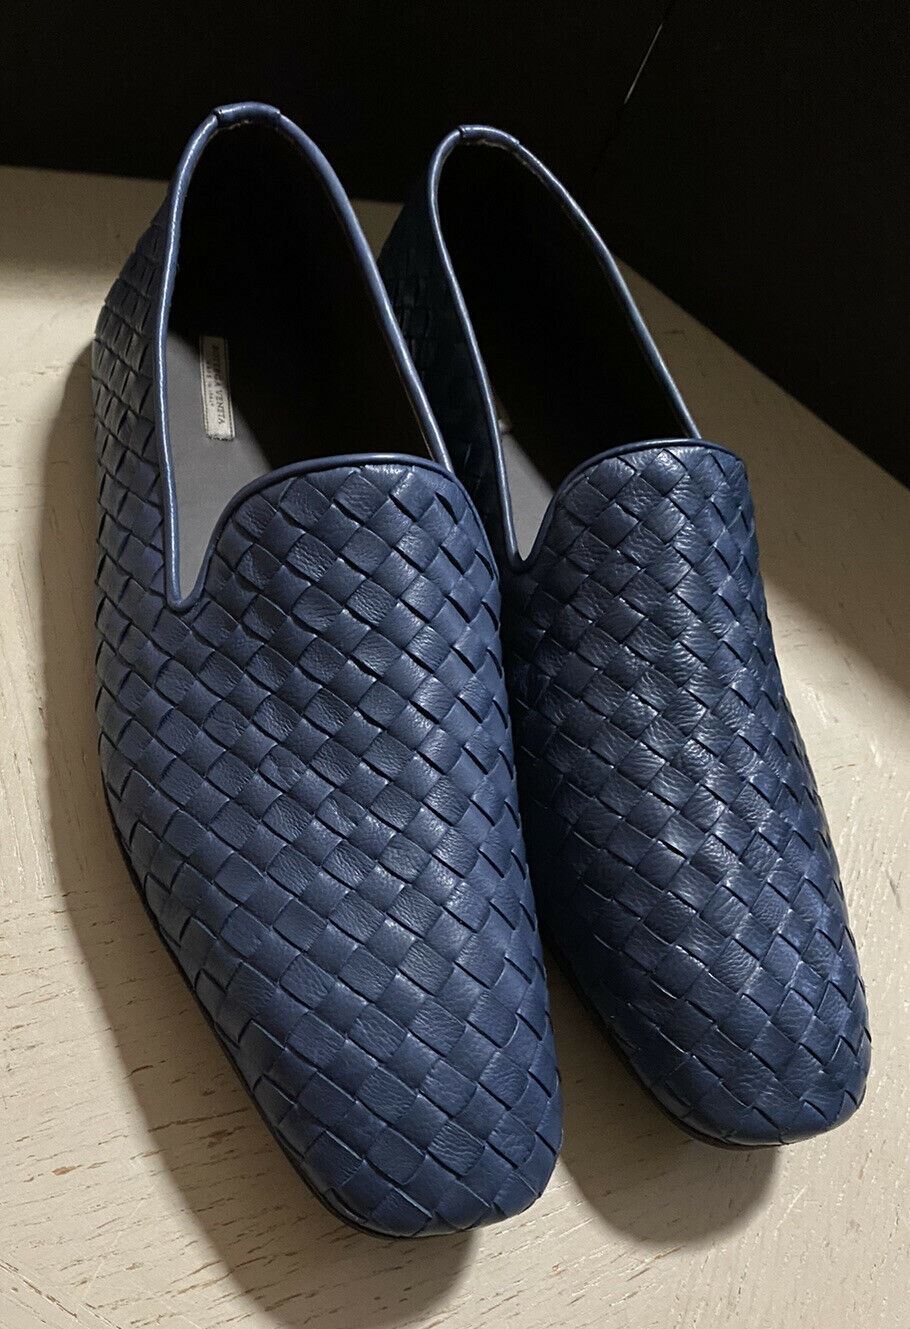 NIB $ 810 Bottega Veneta Herren Leder-Loafer-Schuhe Blau 8 US/41 Eu